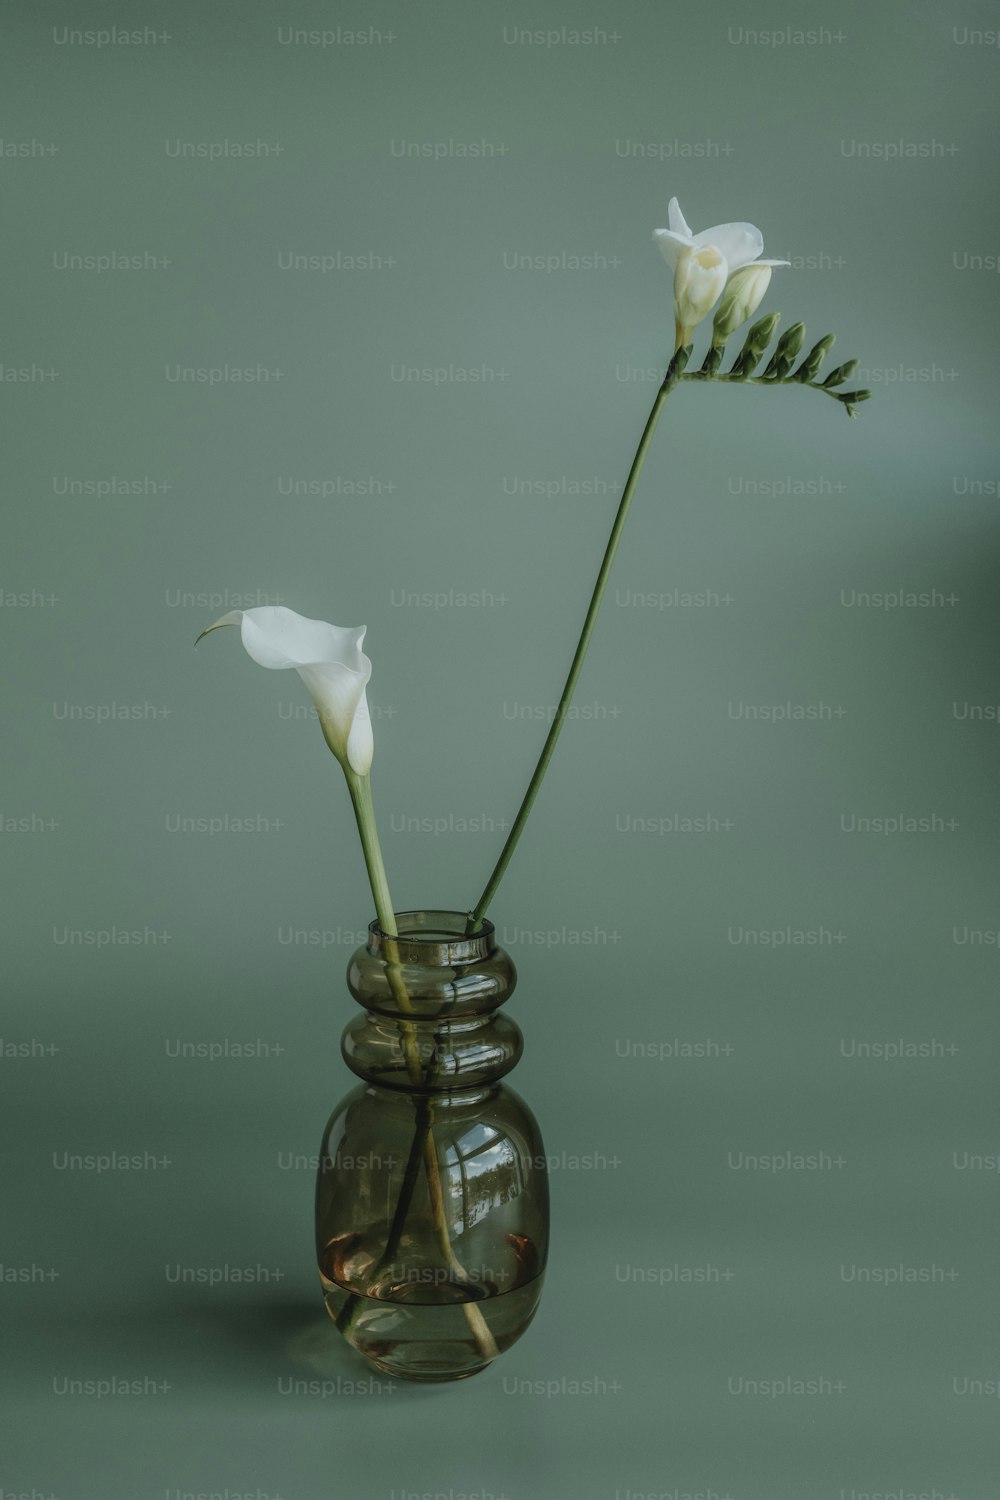 deux fleurs blanches dans un vase en verre sur une table